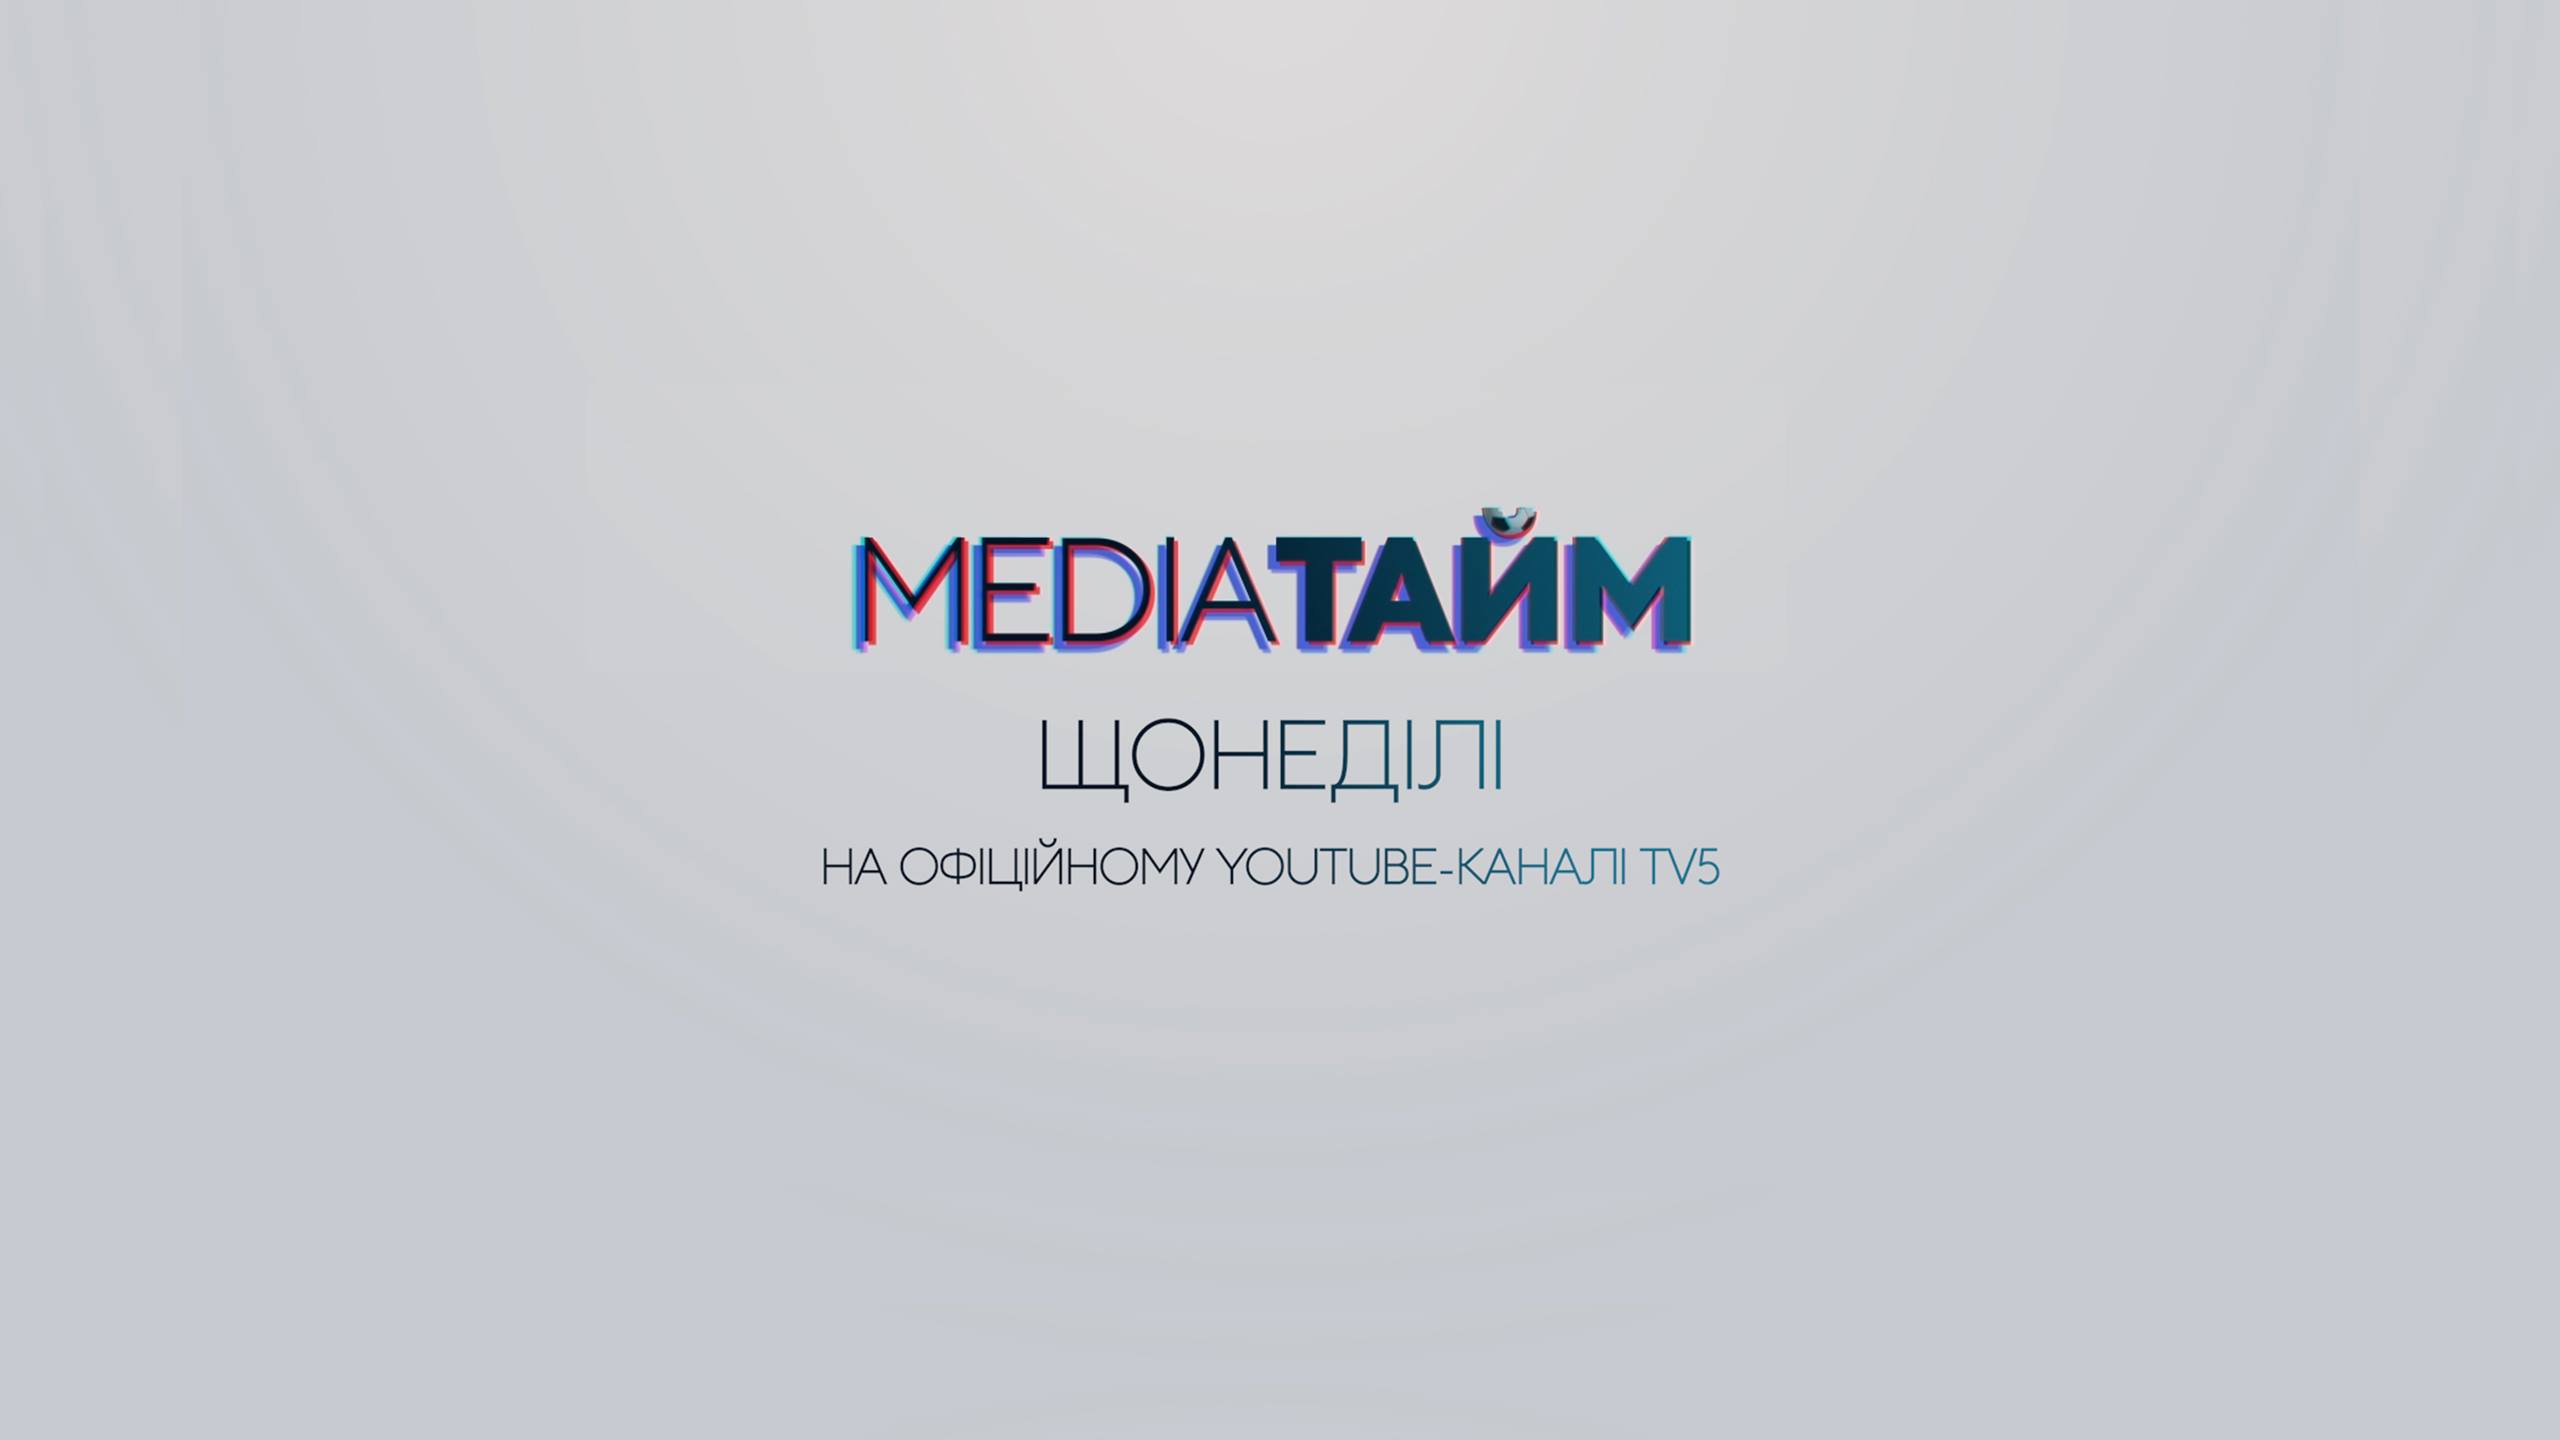 Запорізький телеканал TV5 запустив нову спортивну программу «MediaТайм»